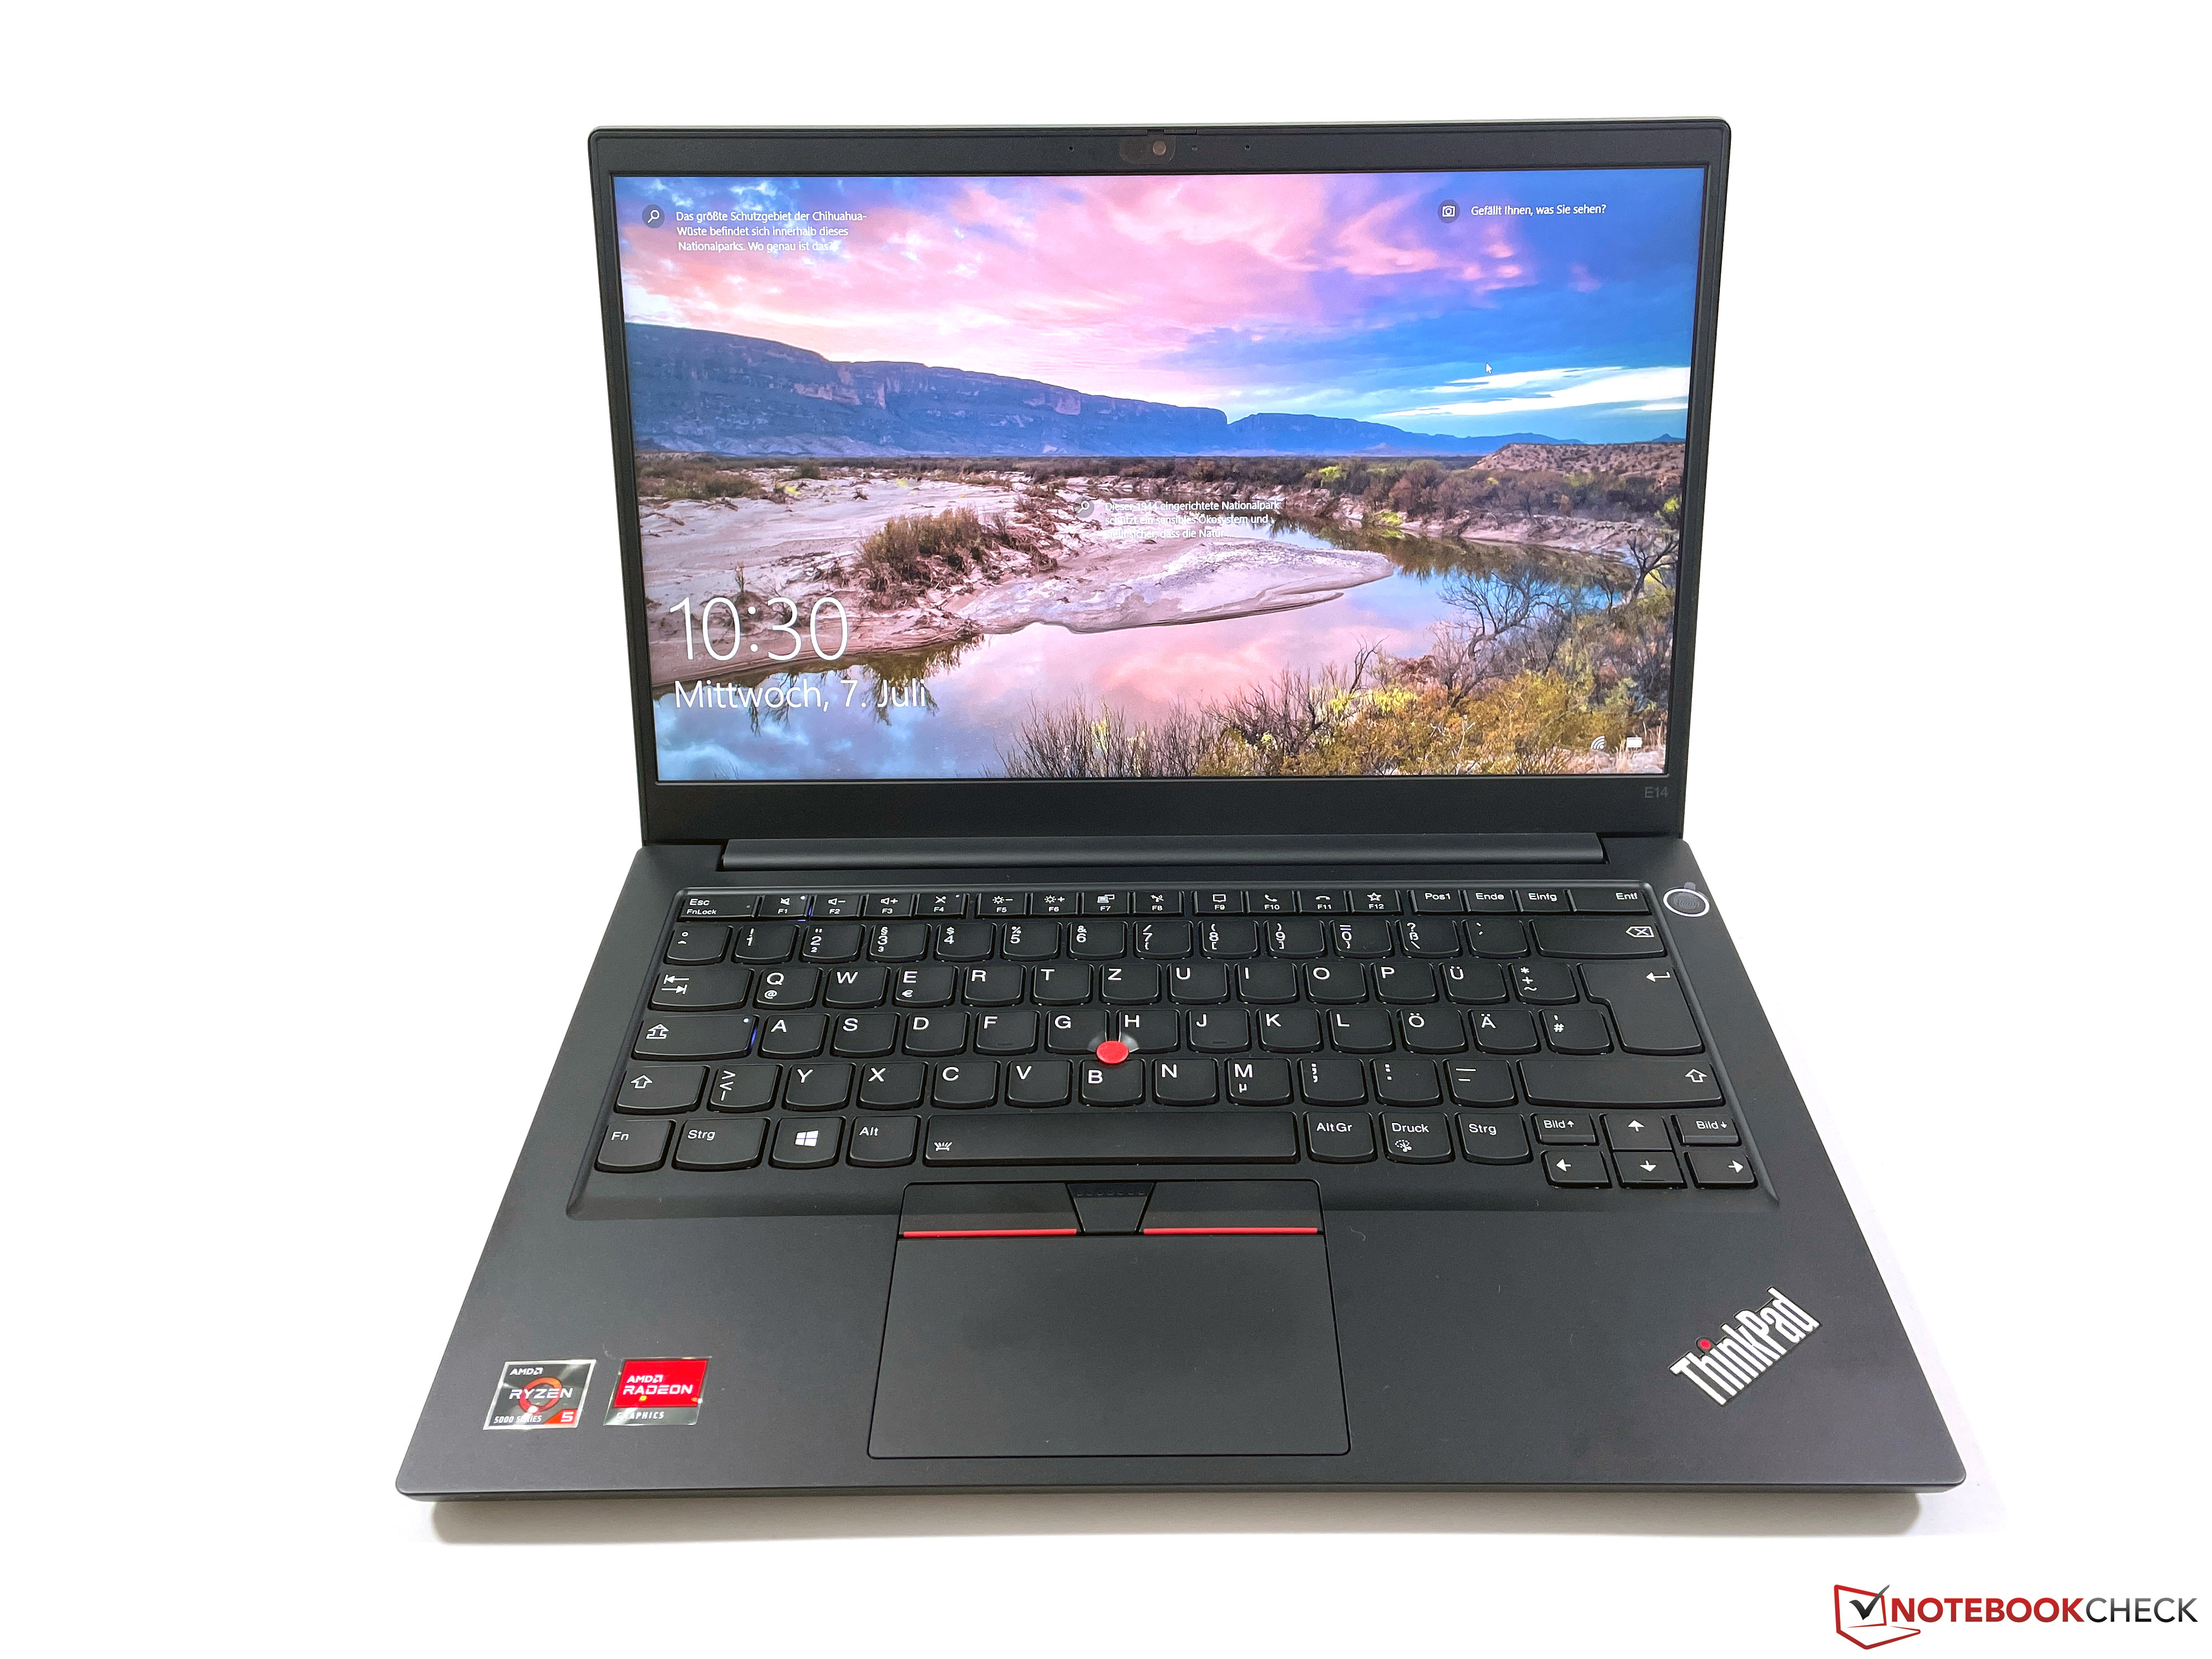 Lenovo thinkpad e14 g3 amd laptop blood and mud